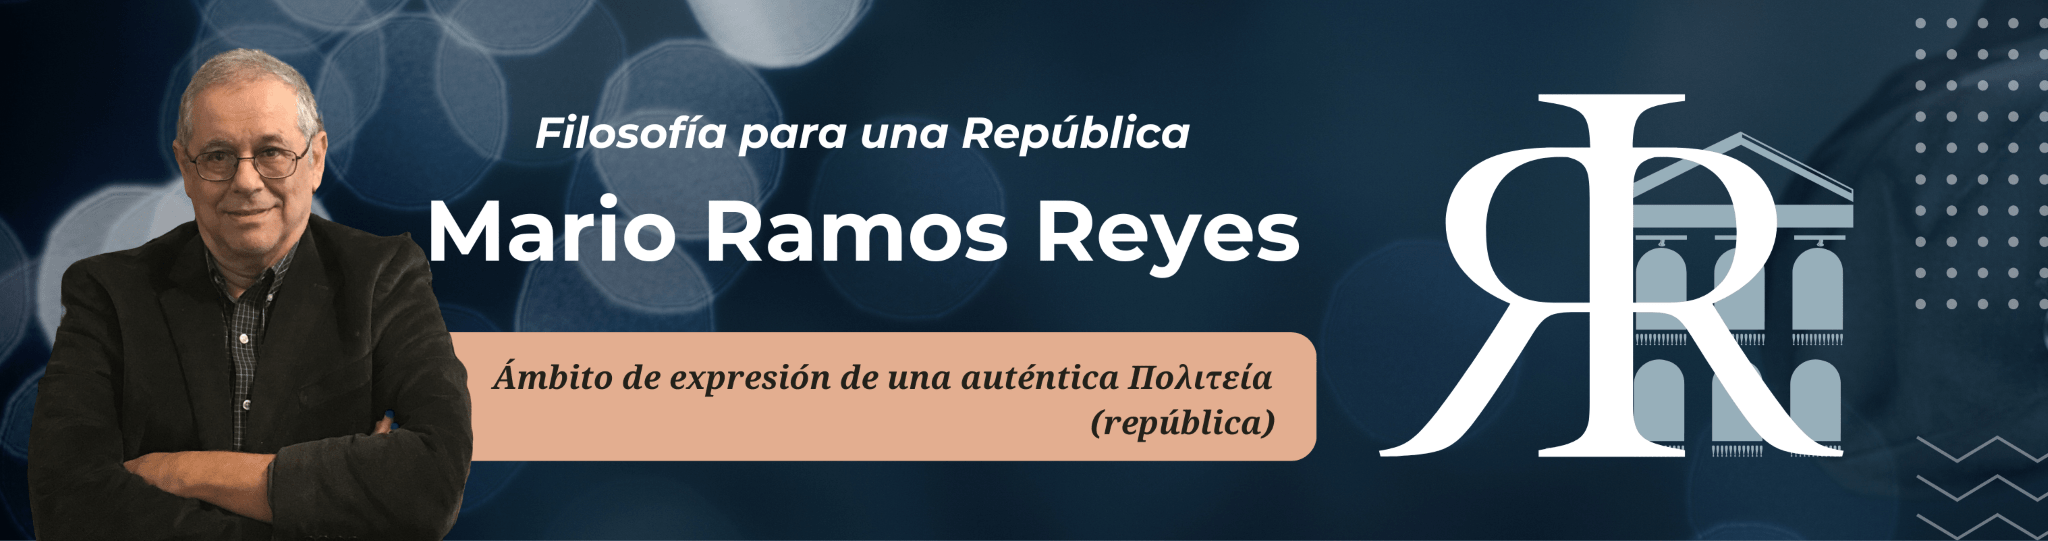 RamosReyes.com